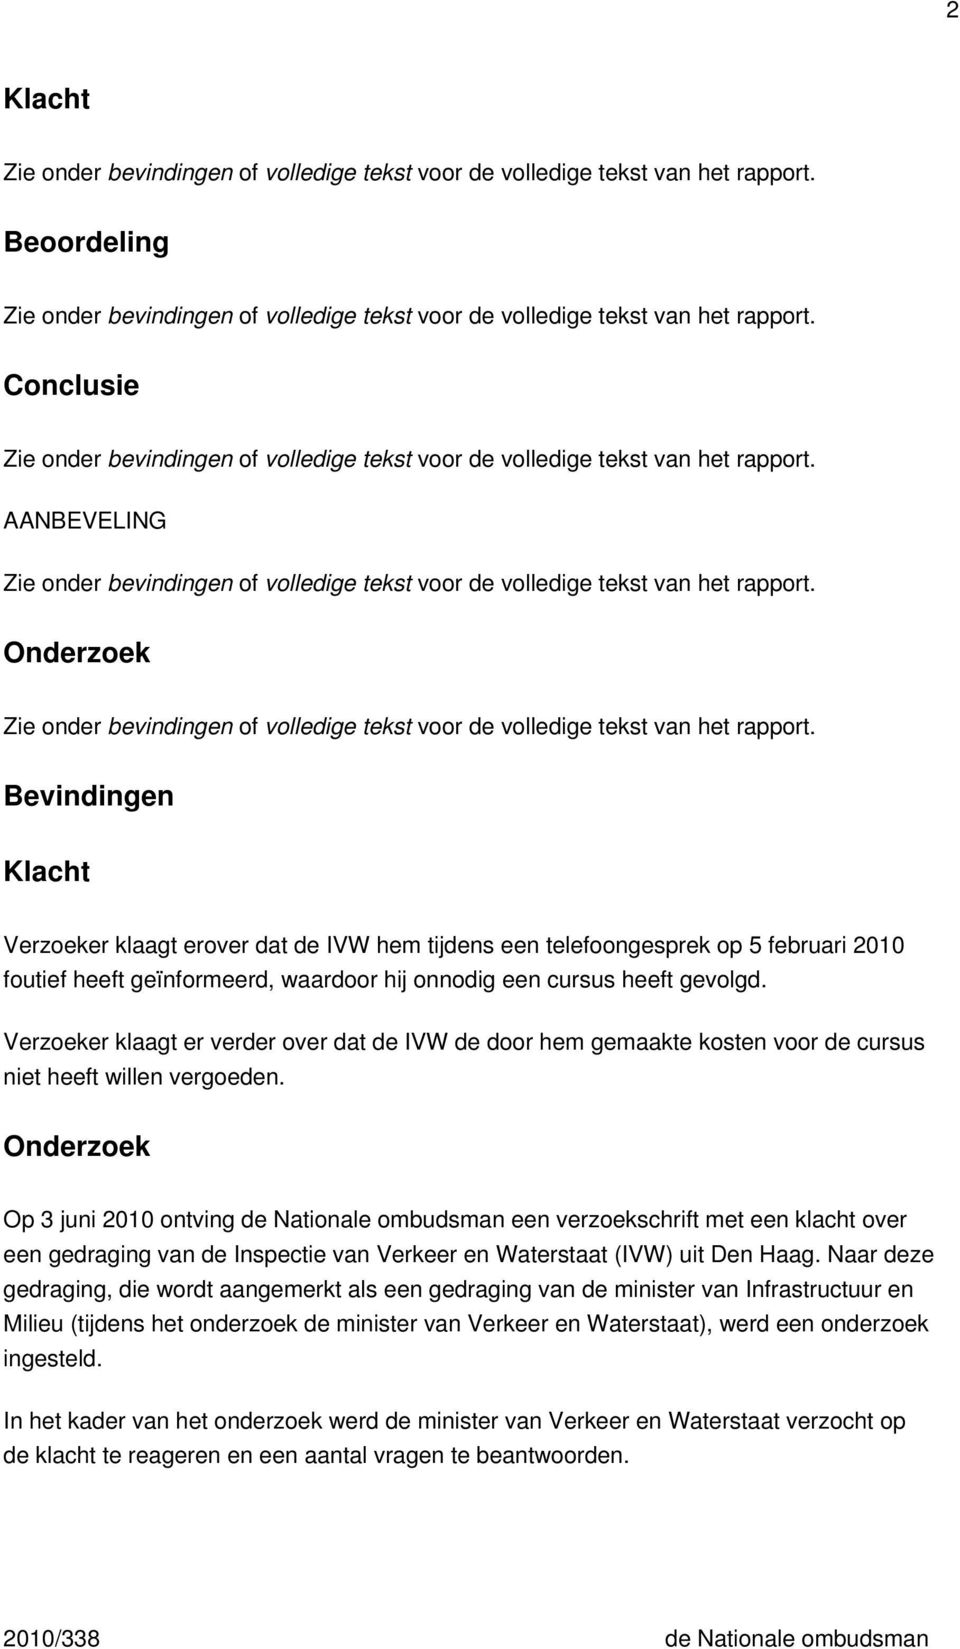 Onderzoek Op 3 juni 2010 ontving de Nationale ombudsman een verzoekschrift met een klacht over een gedraging van de Inspectie van Verkeer en Waterstaat (IVW) uit Den Haag.